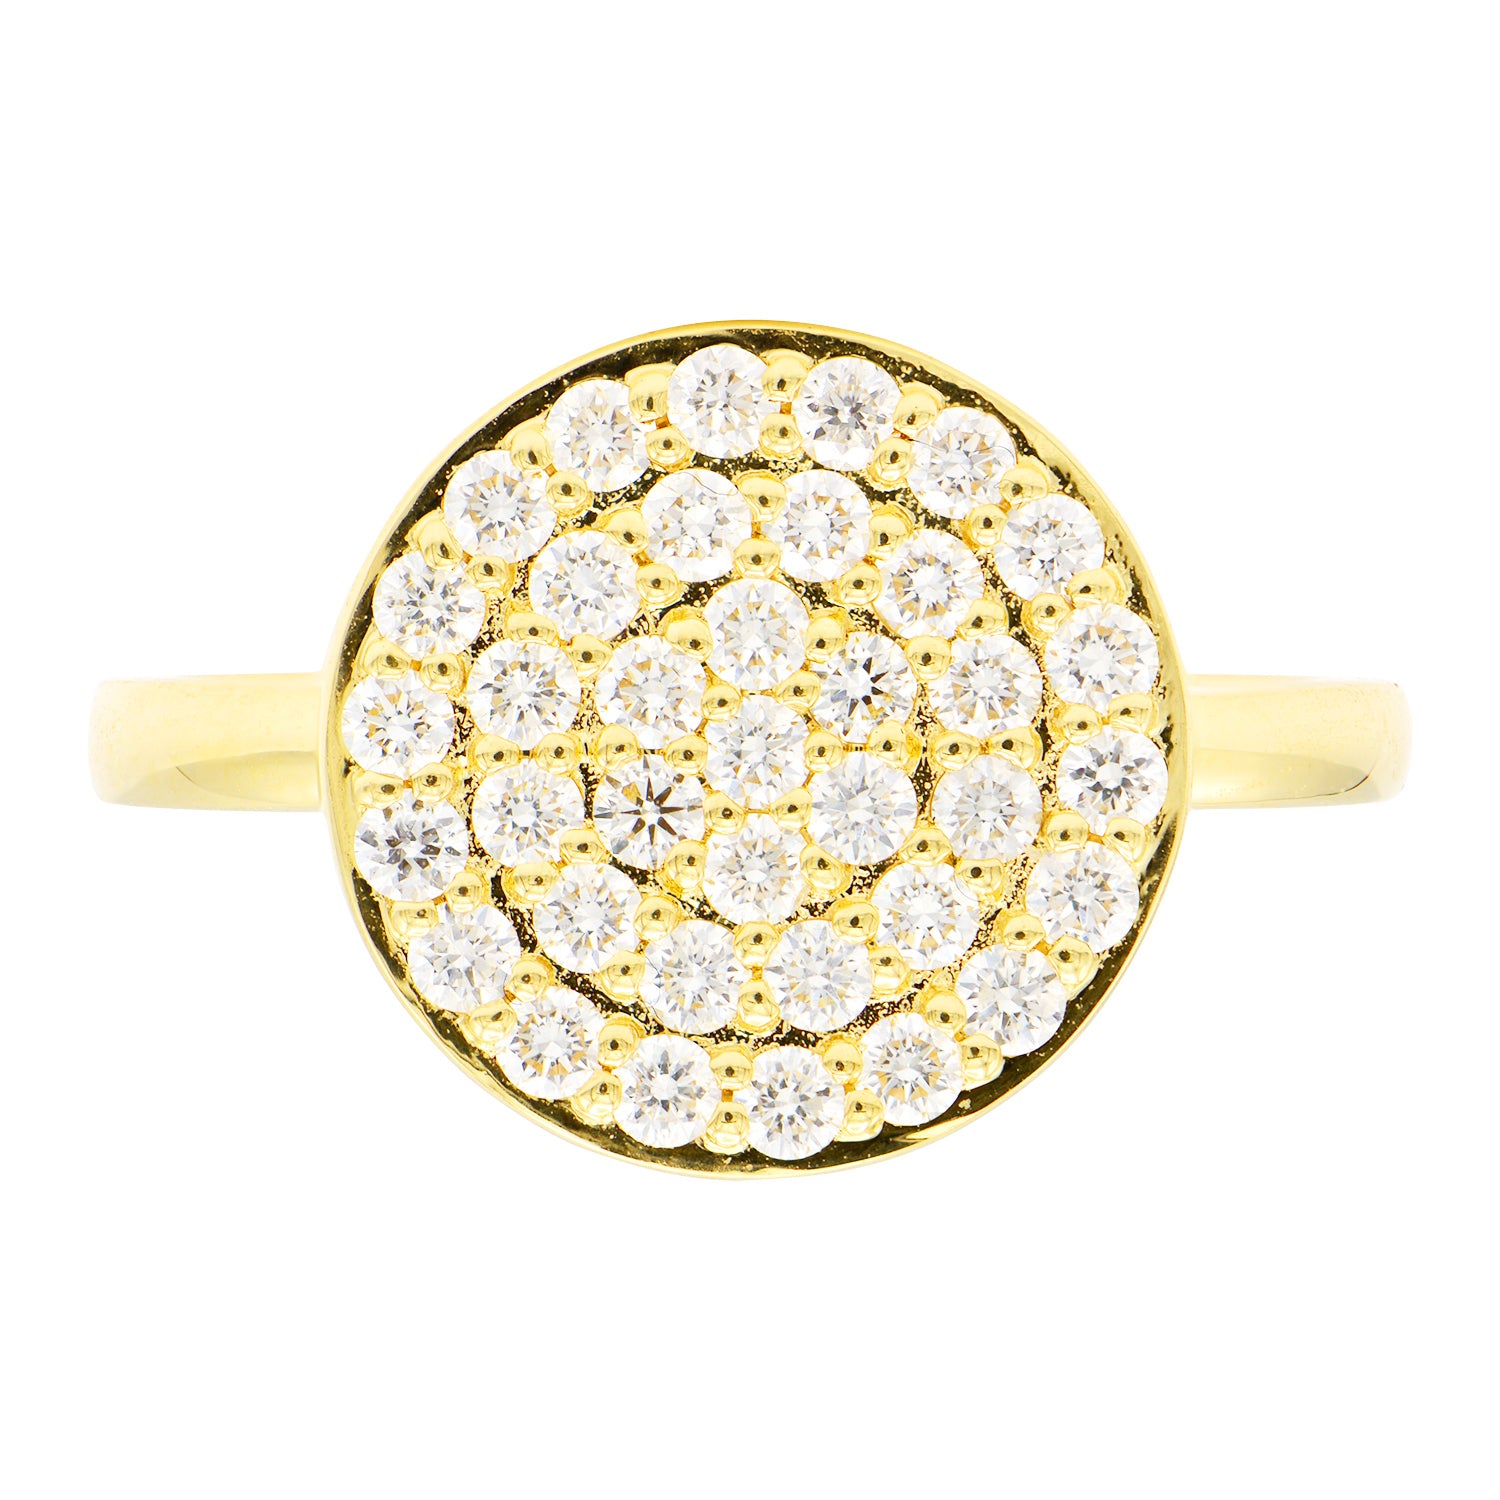 14K Yellow Gold Diamond Circle Ring